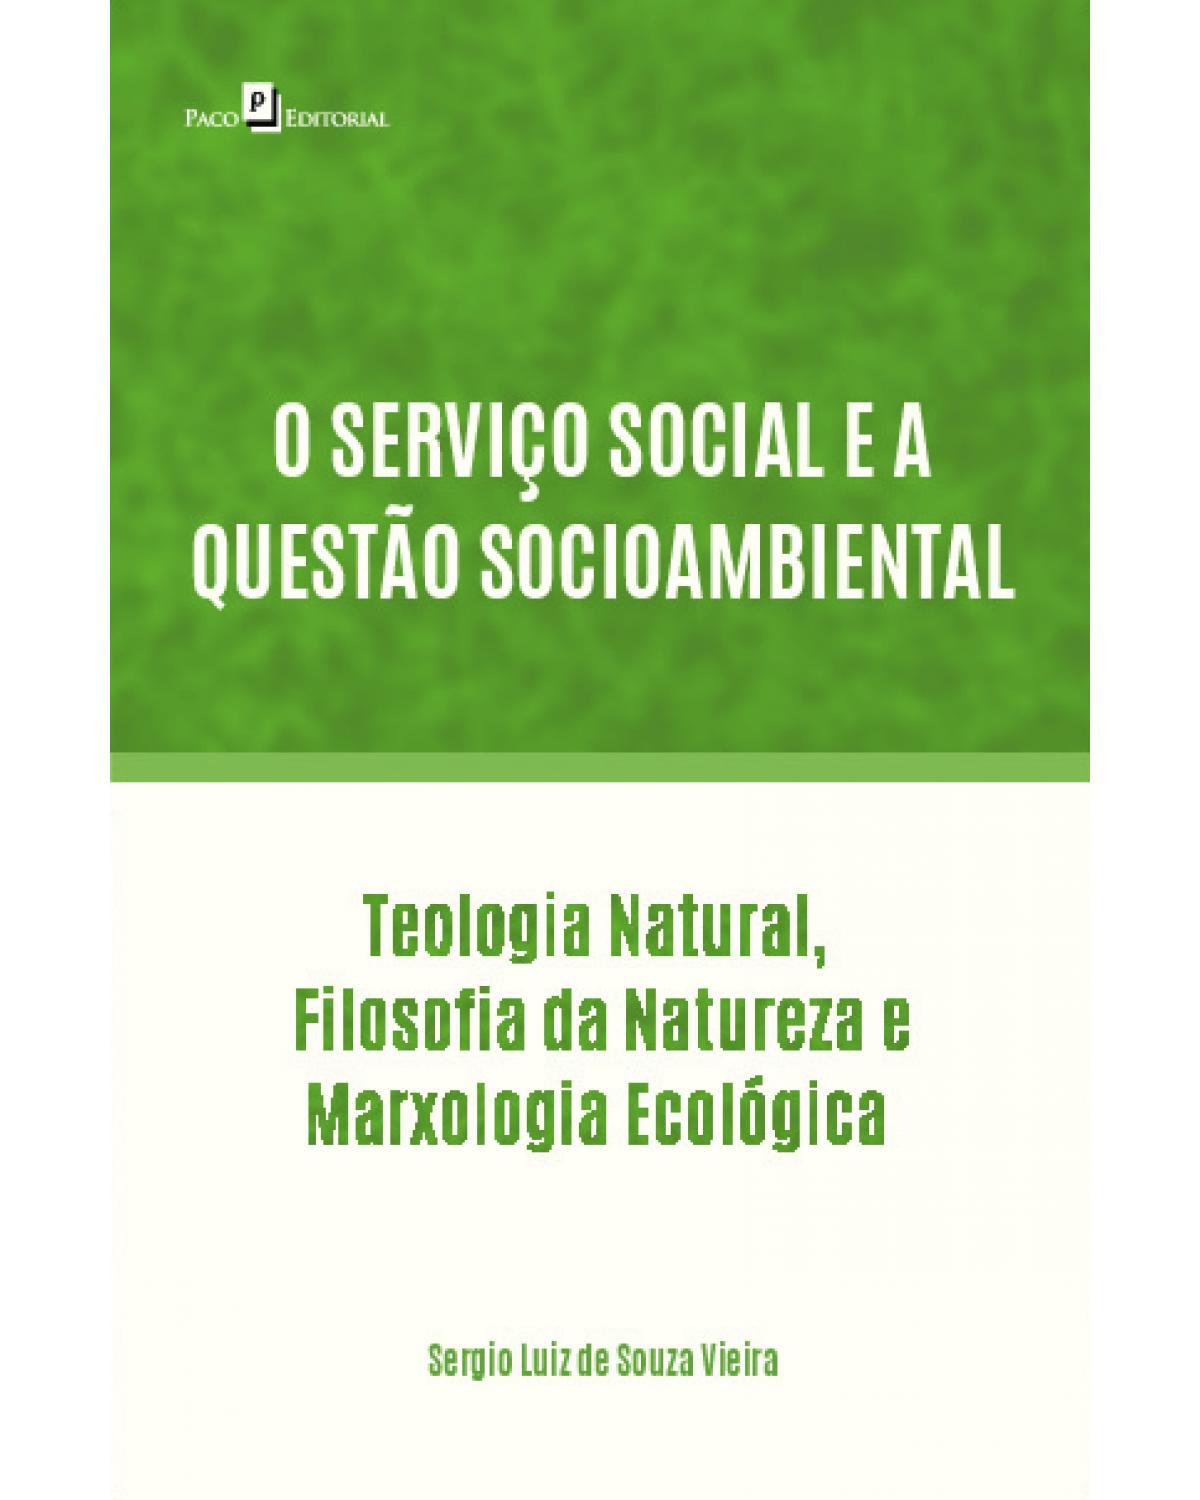 O serviço social e a questão socioambiental - Tteologia natural, filosofia da natureza e marxologia ecológica - 1ª Edição | 2020